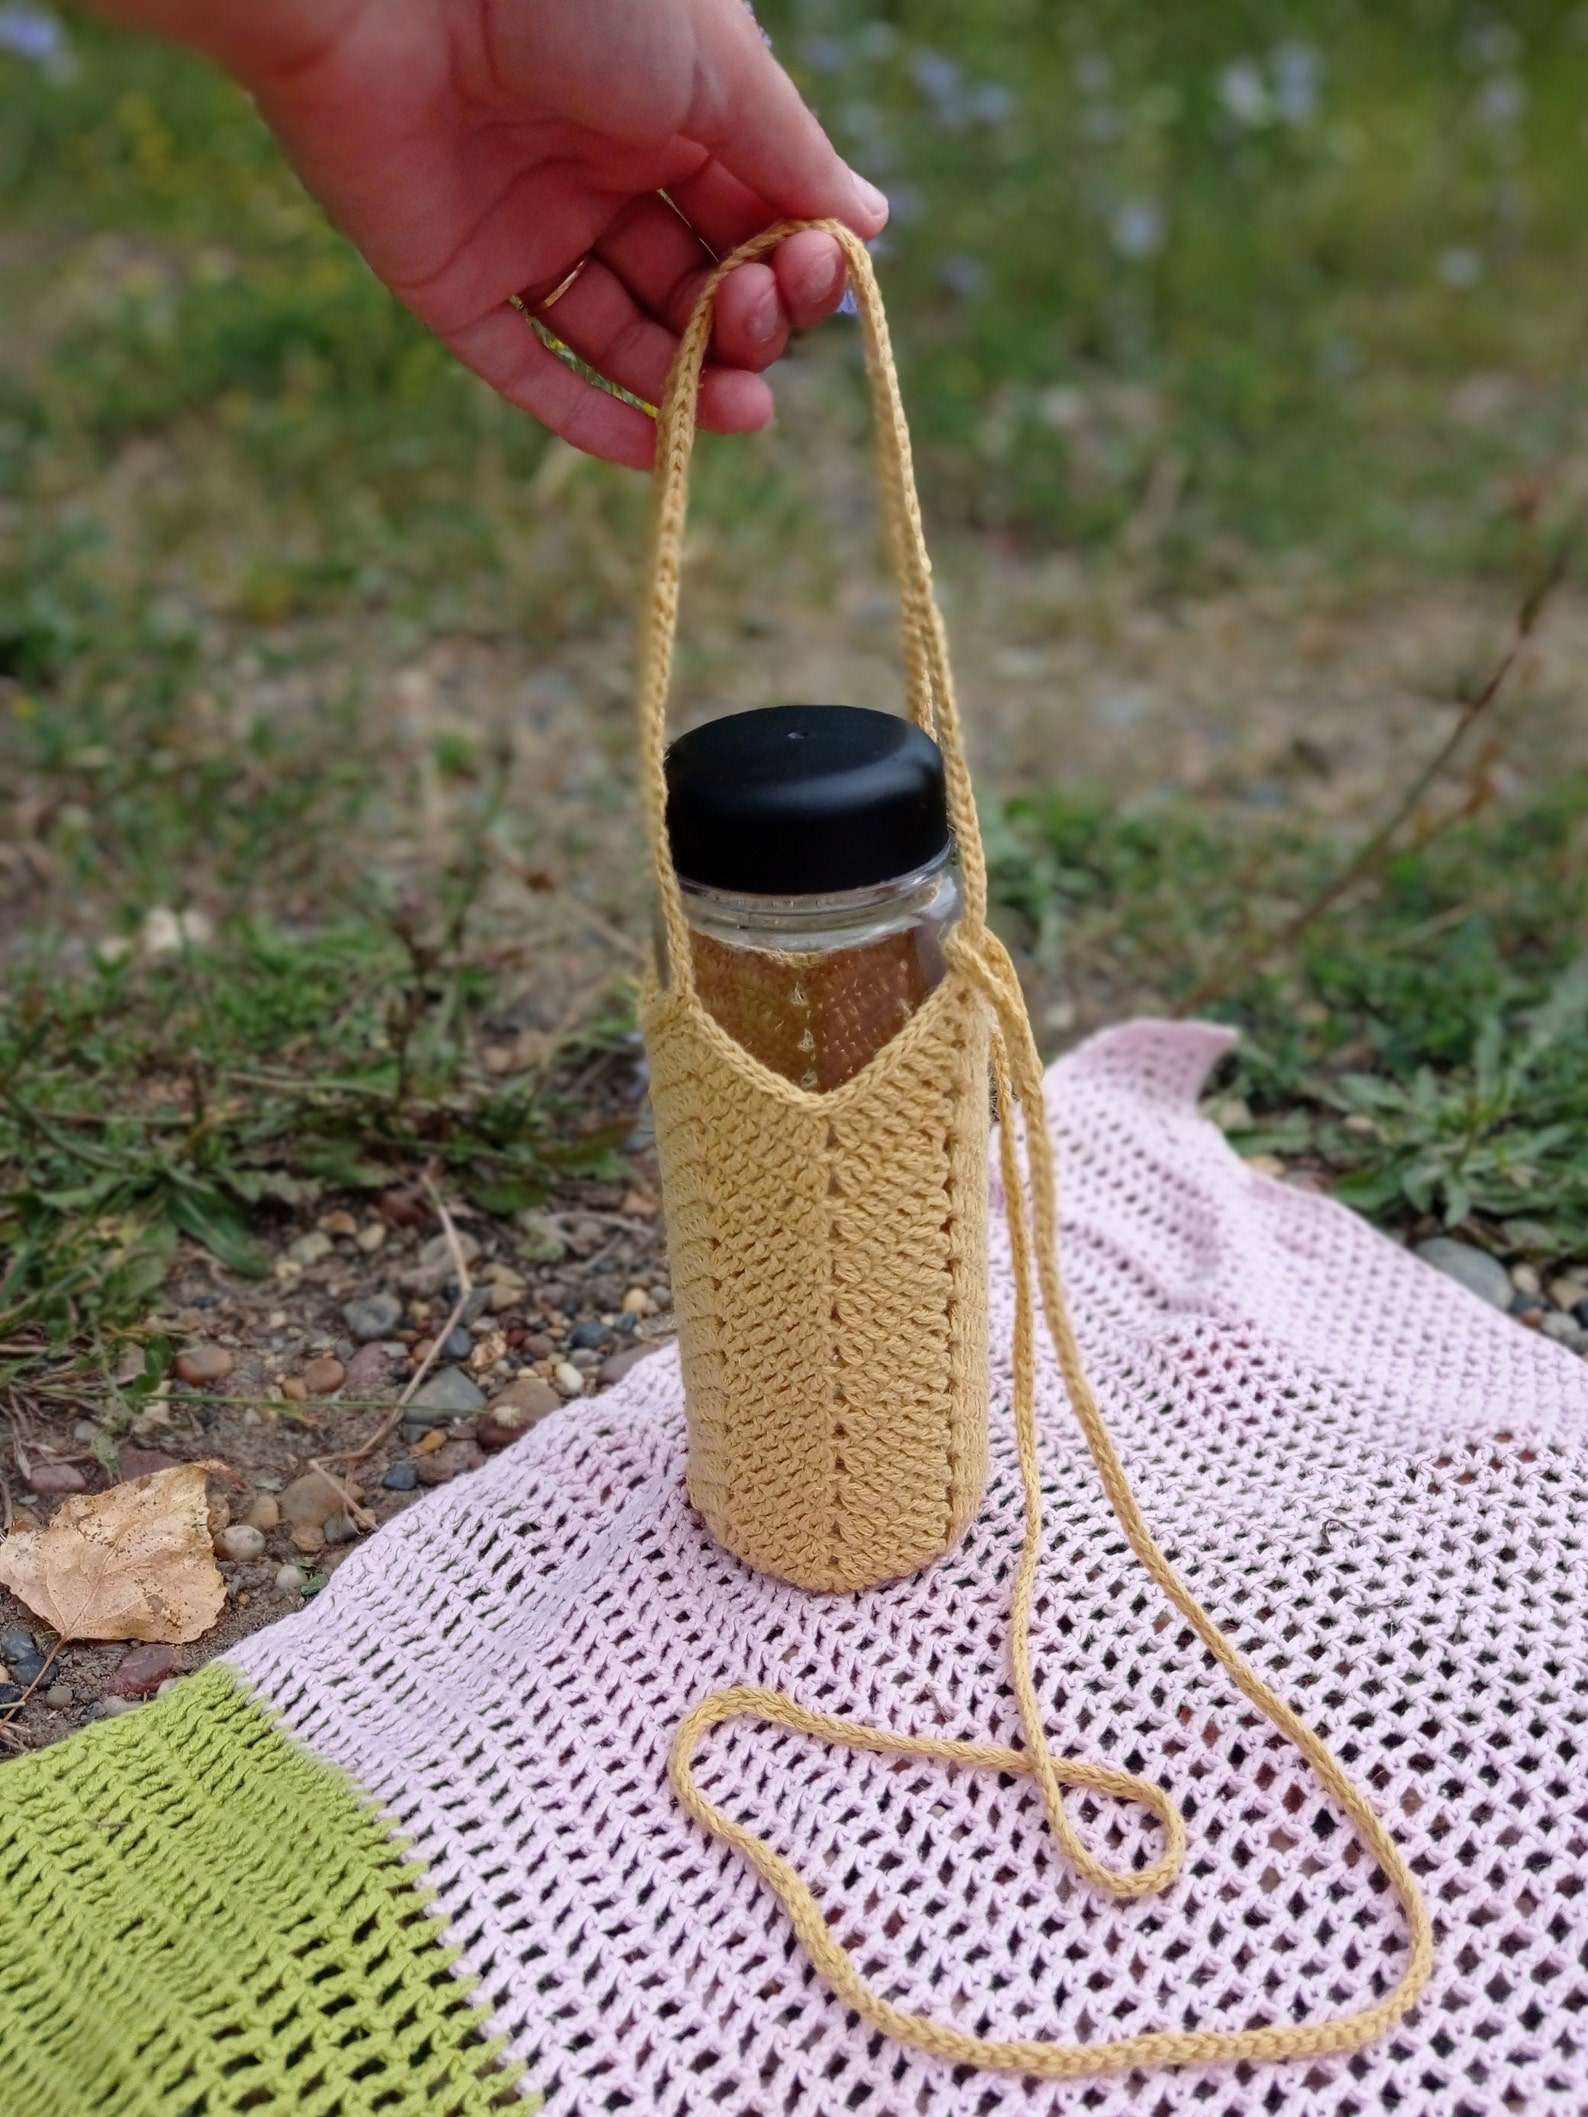 Crochet hydroflask bag. Handmade water bottle holder. | Etsy